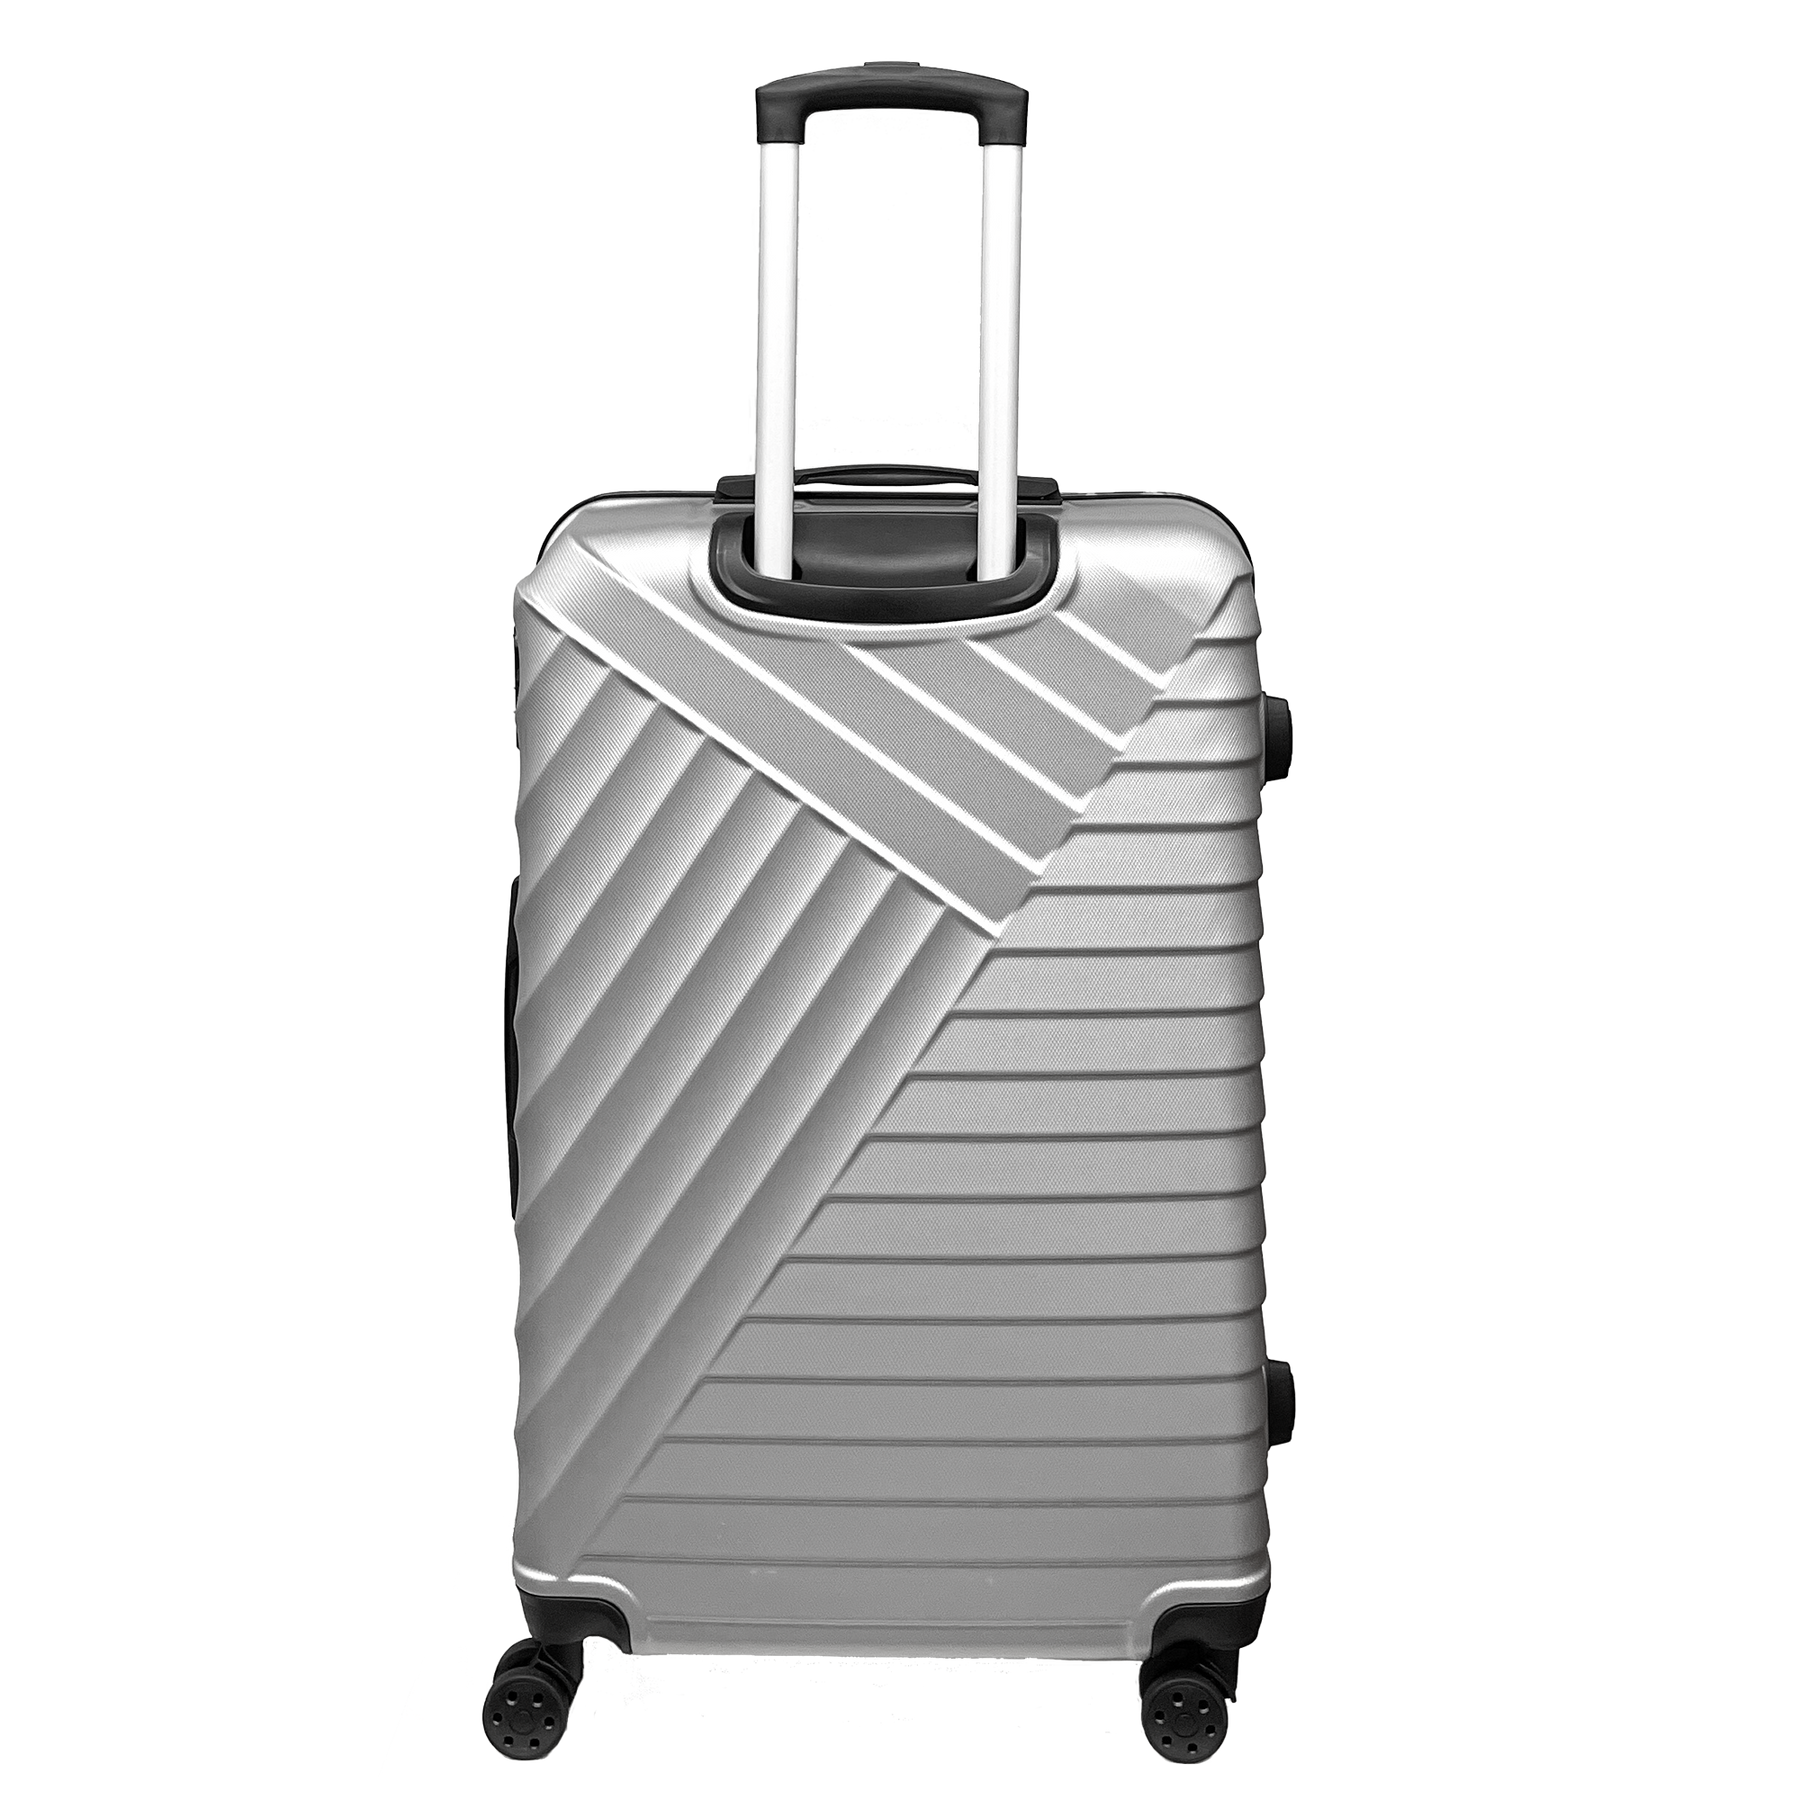 Mittlerer Koffer von STSHLine aus robustem ABS, Maße 65x43x26 cm, mit 4 doppelten 360°-Rädern - Leicht und widerstandsfähig
